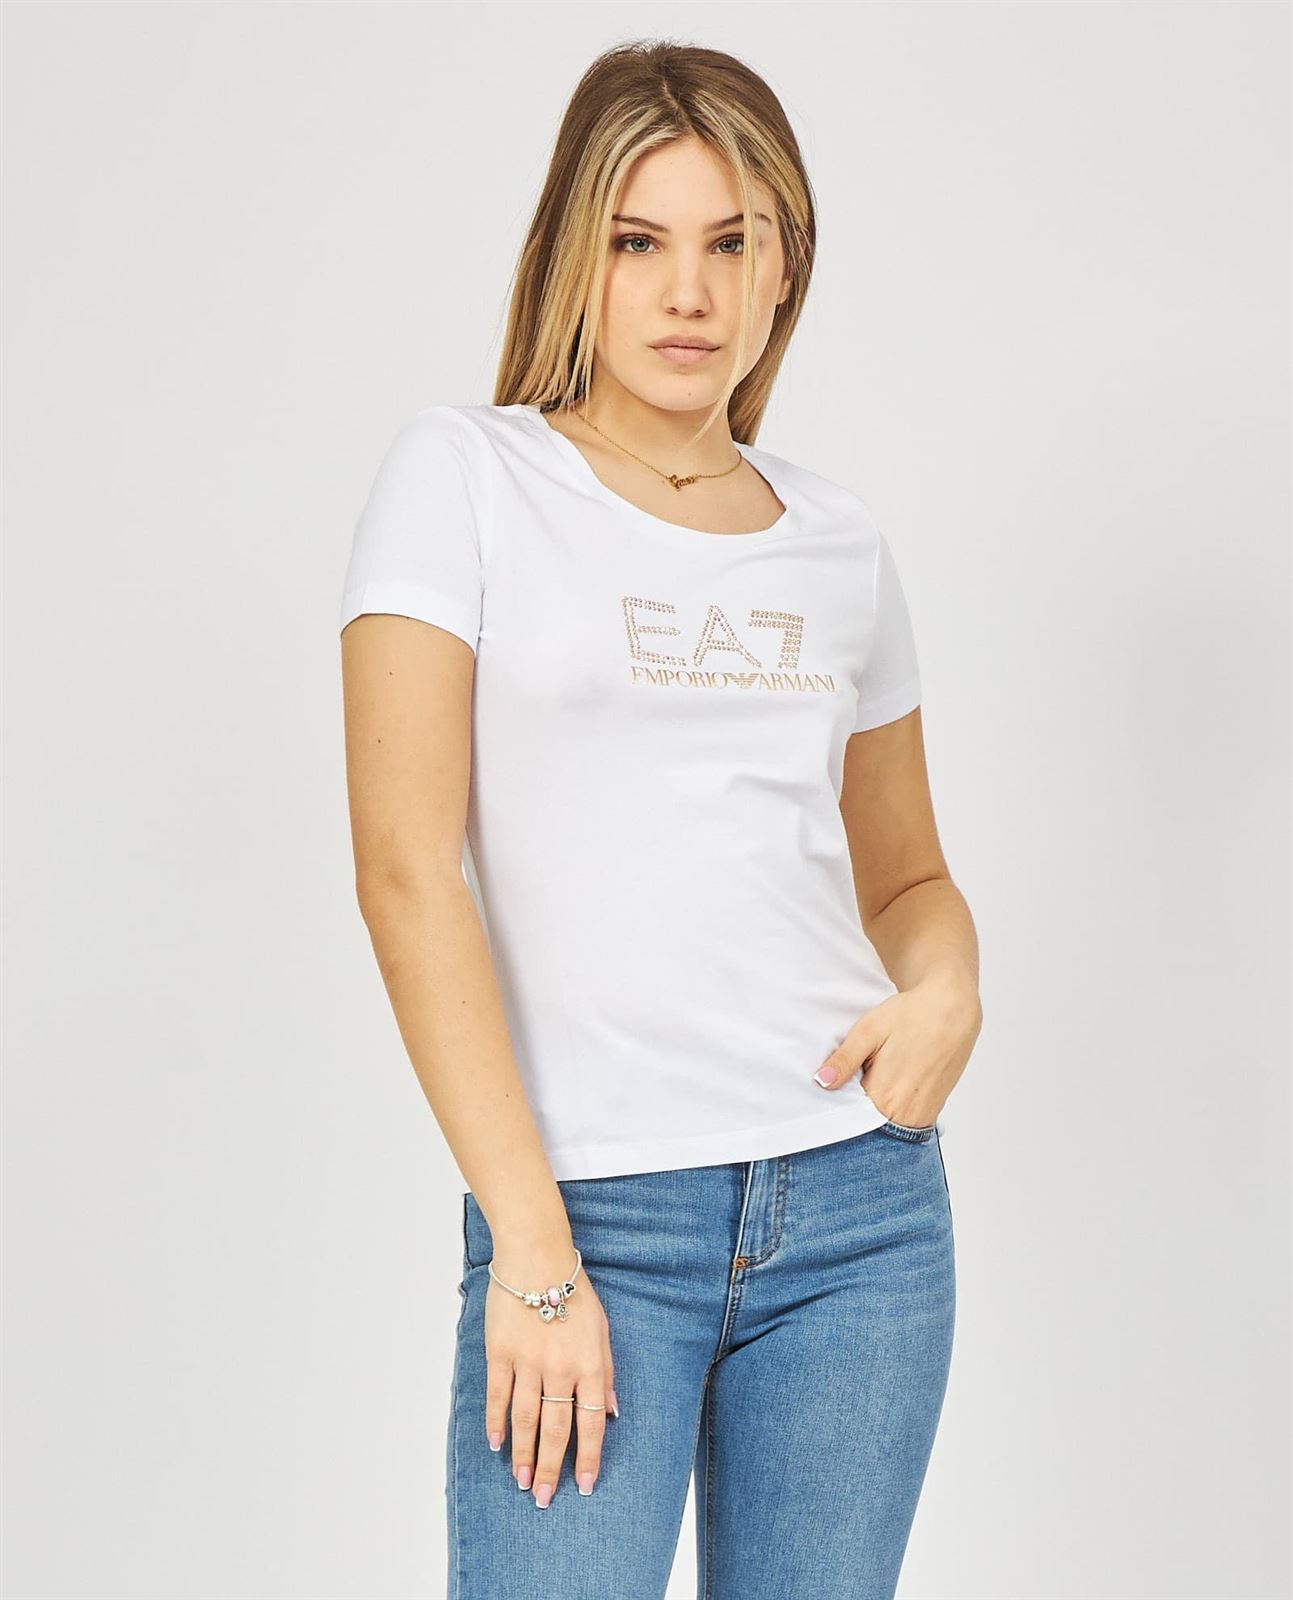 Camiseta EA7 Emporio Armani 8NTT67 TJDQZ 1100 white - Imagen 1